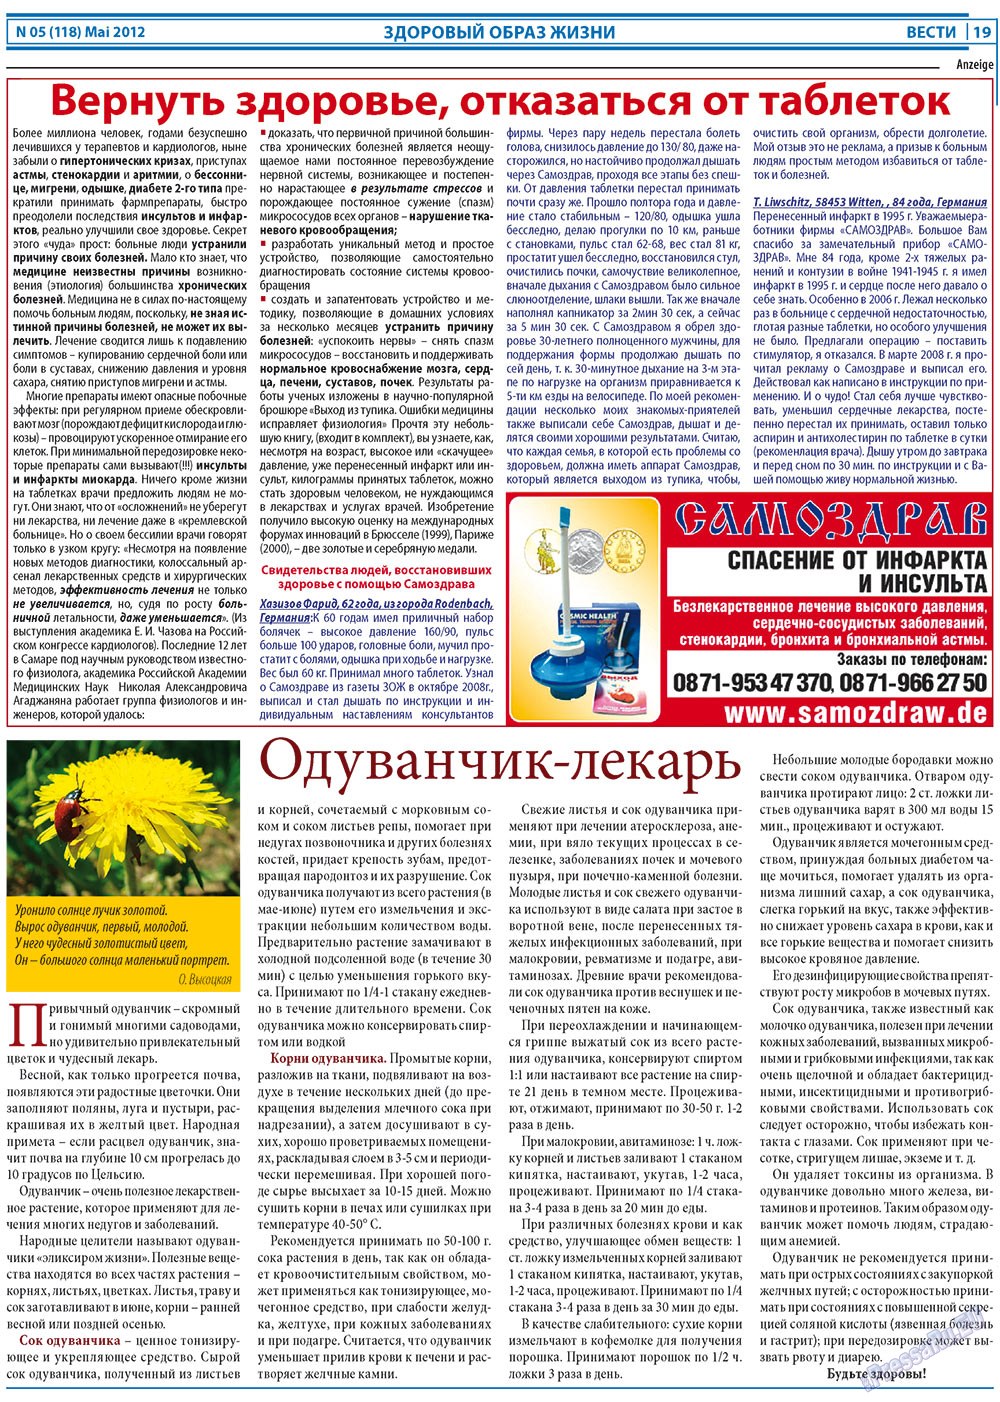 Вести, газета. 2012 №5 стр.19